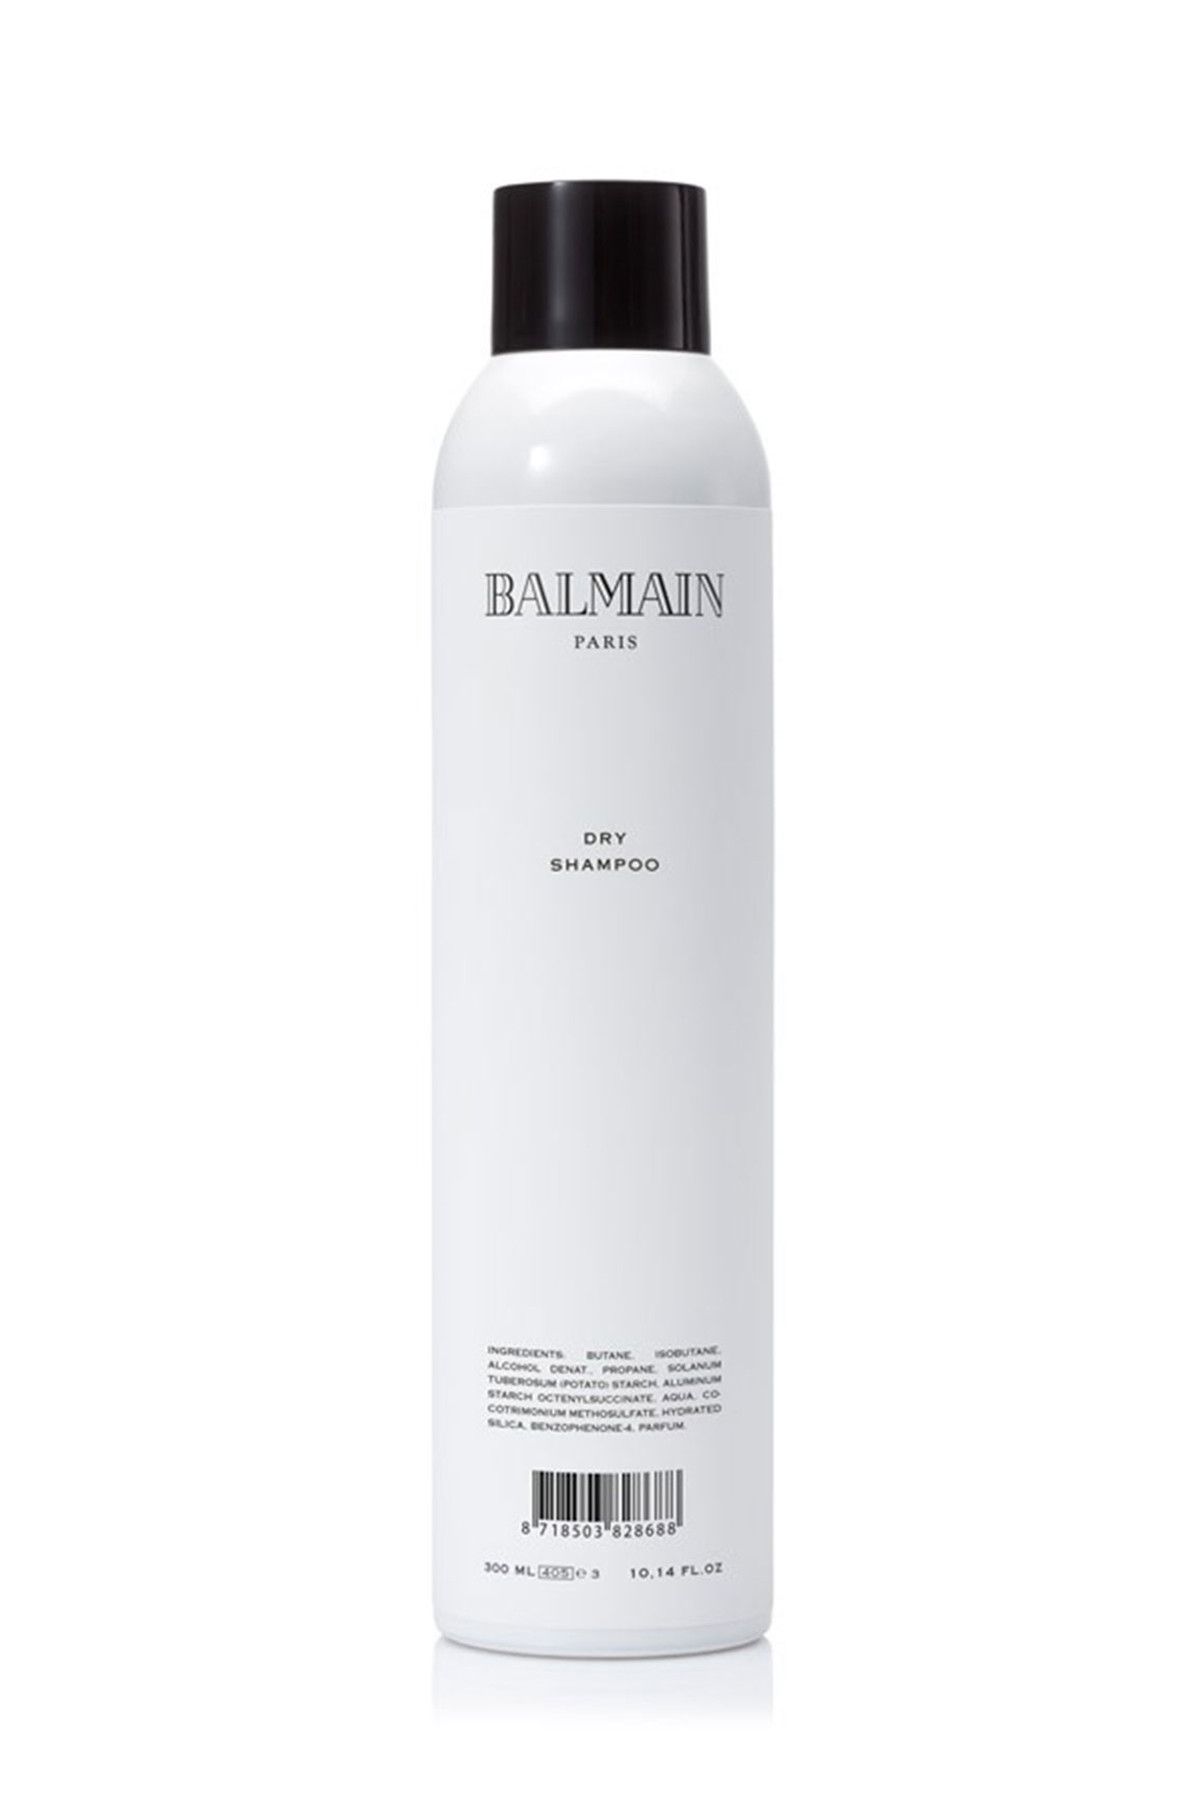 BALMAIN Kuru Şampuan - Hc Dry Shampoo 300 ml 8718503828688